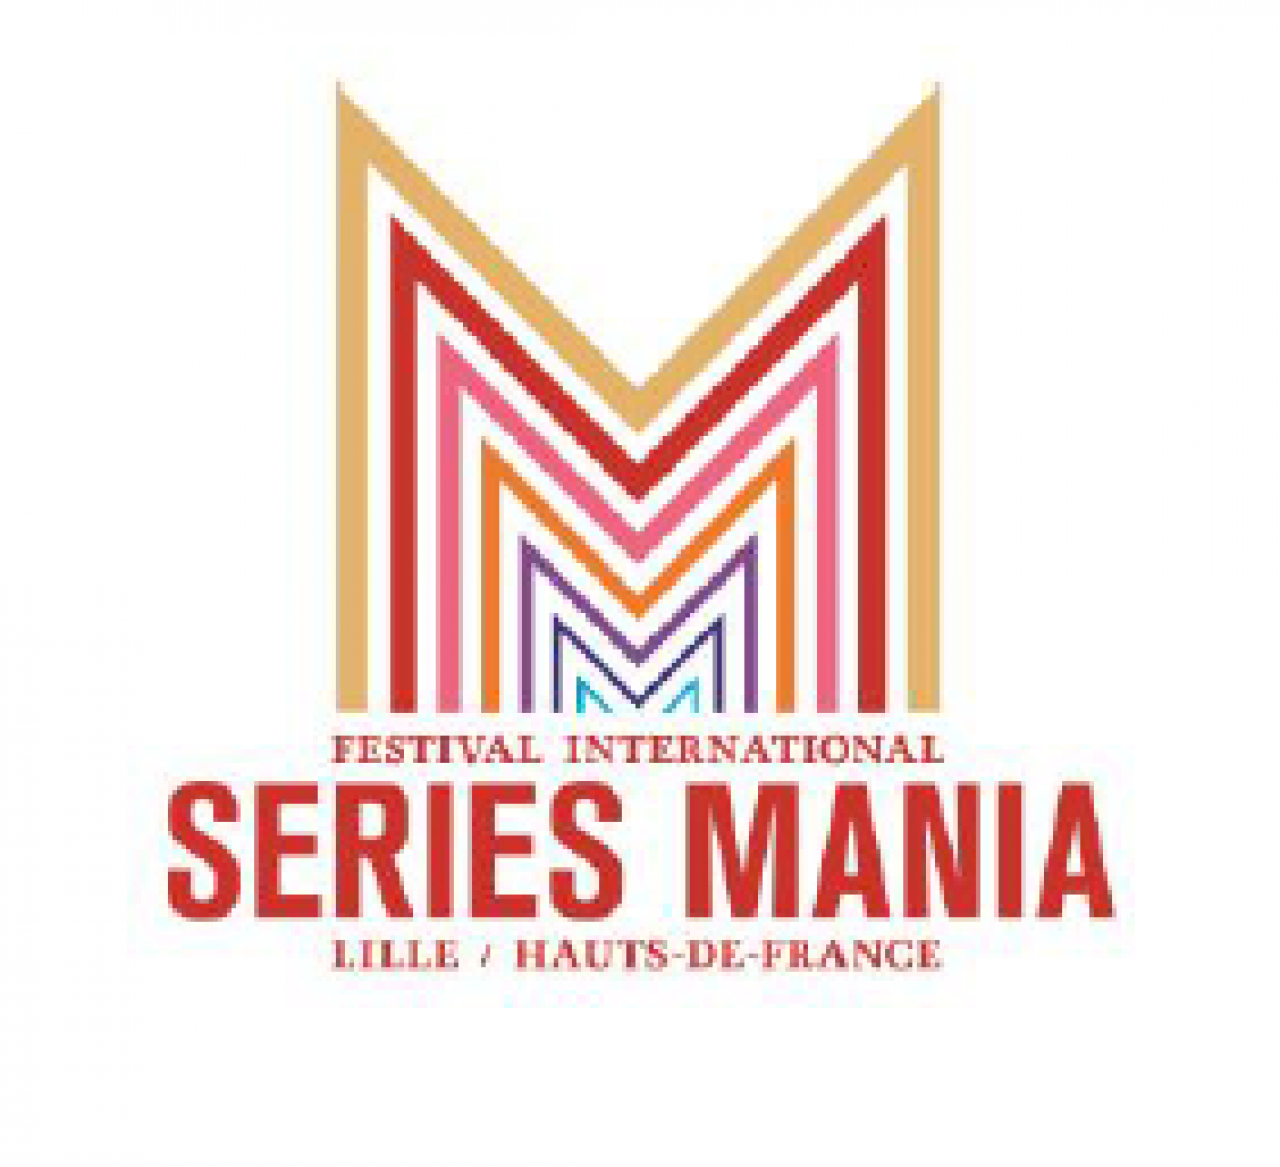 Series Mania 2018